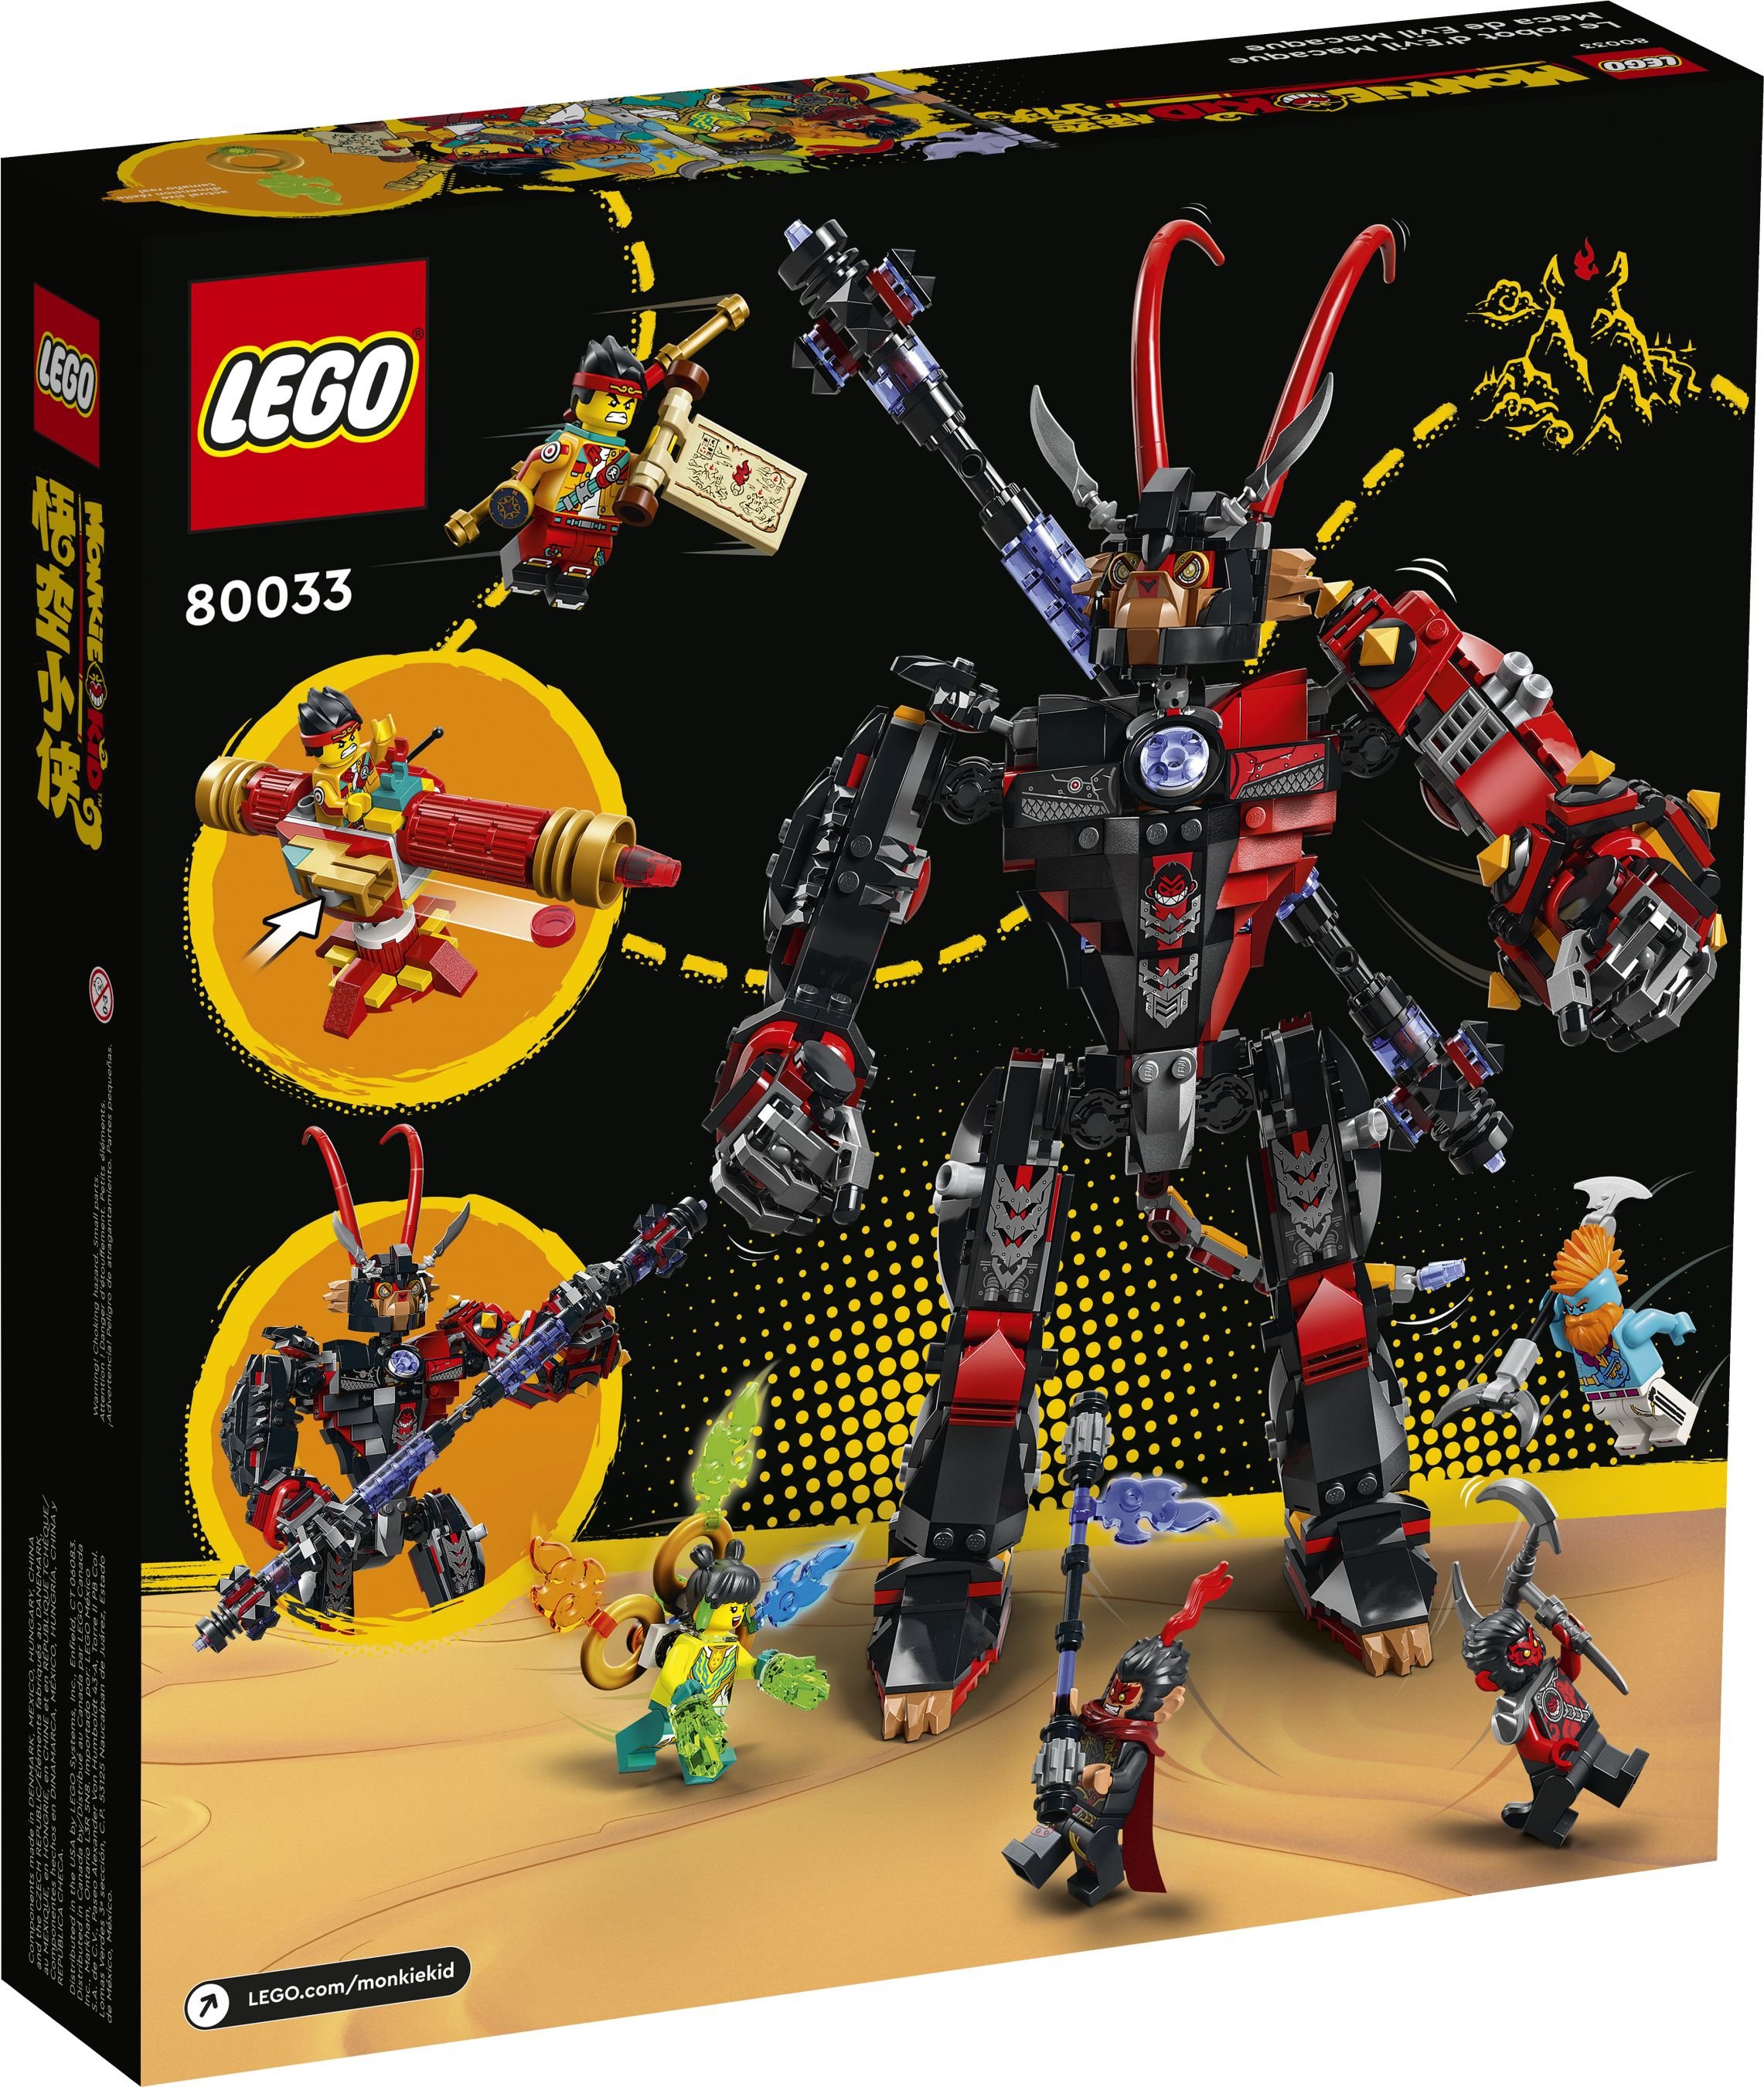 LEGO Monkie Kid 80033 Mech von Evil Macaque LEGO_80033_Box5_v39.jpg